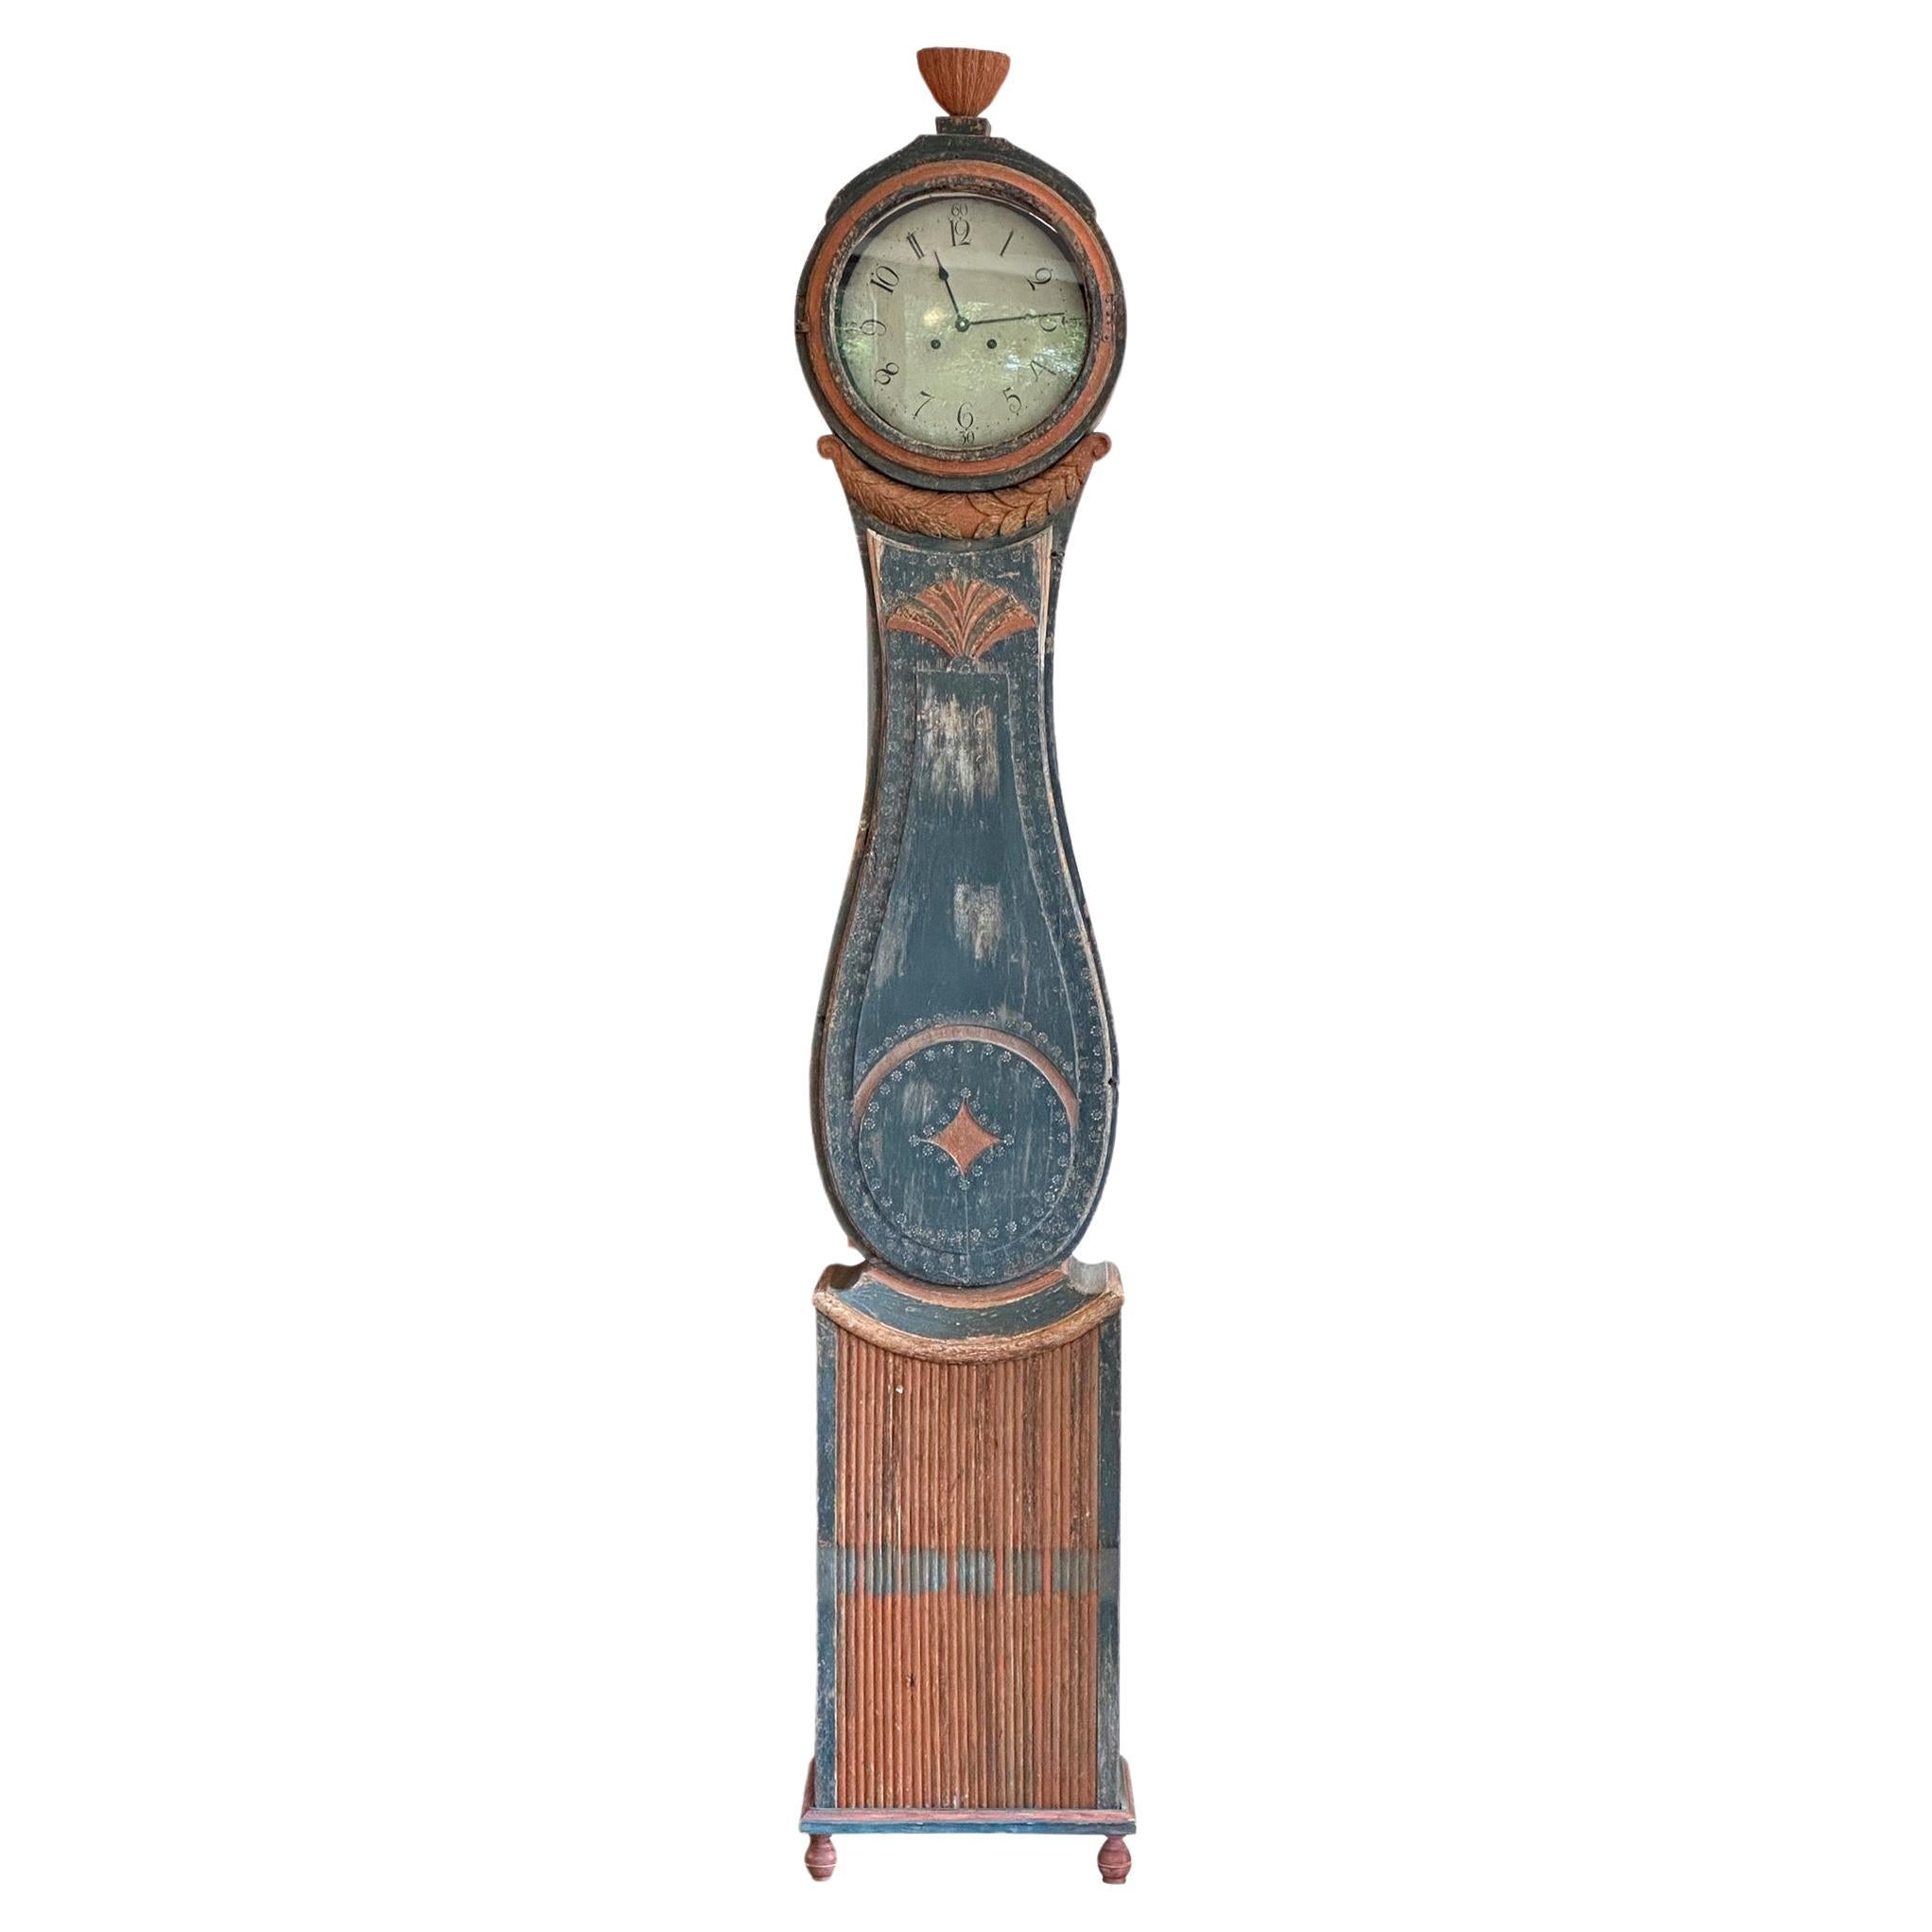 Horloge suédoise du milieu du 19ème siècle avec peinture bleue